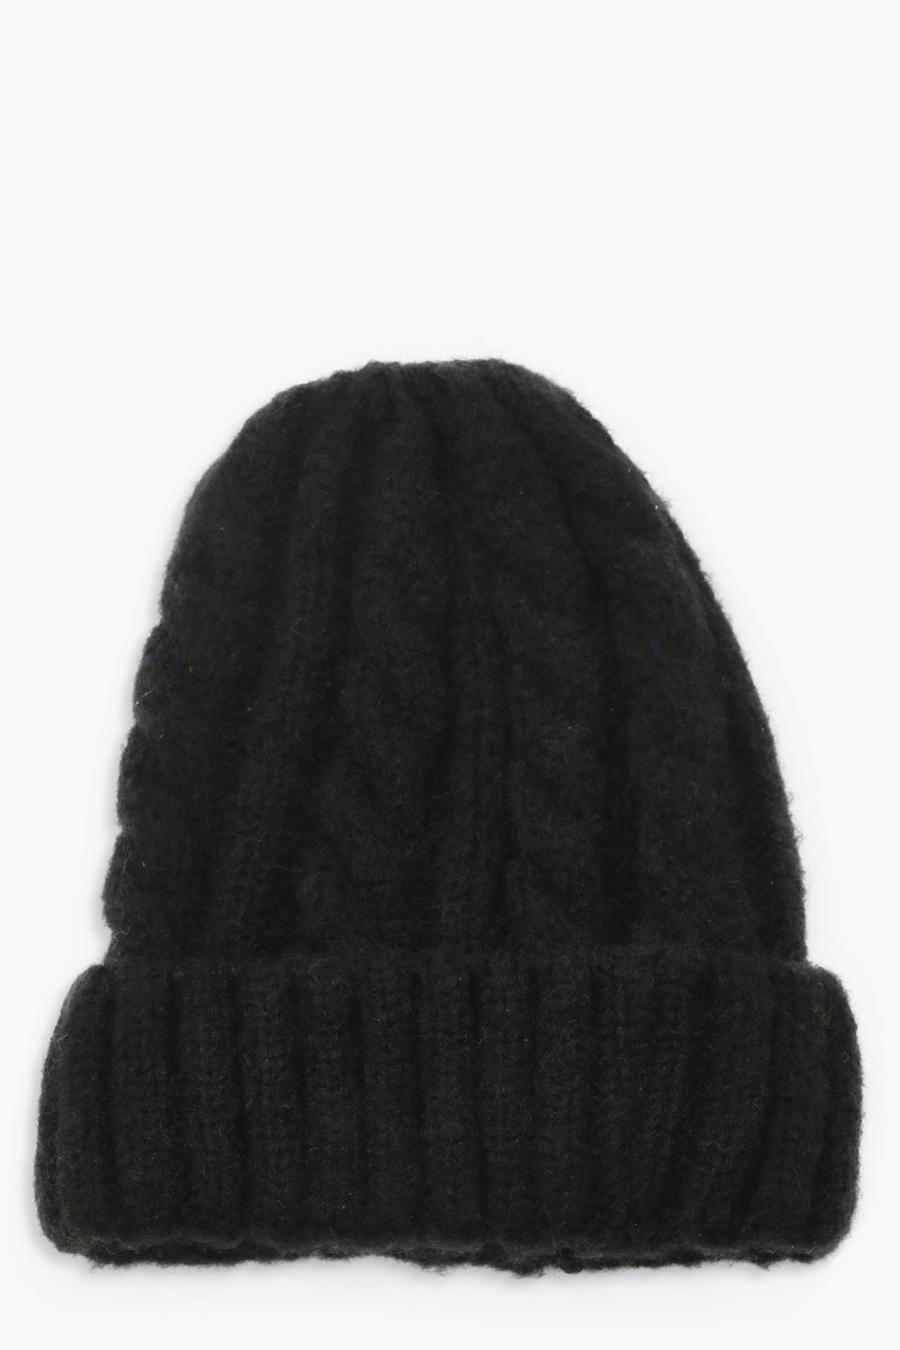 שחור black כובע צמר בסריגת חבל עבה עם שילוב צבעים